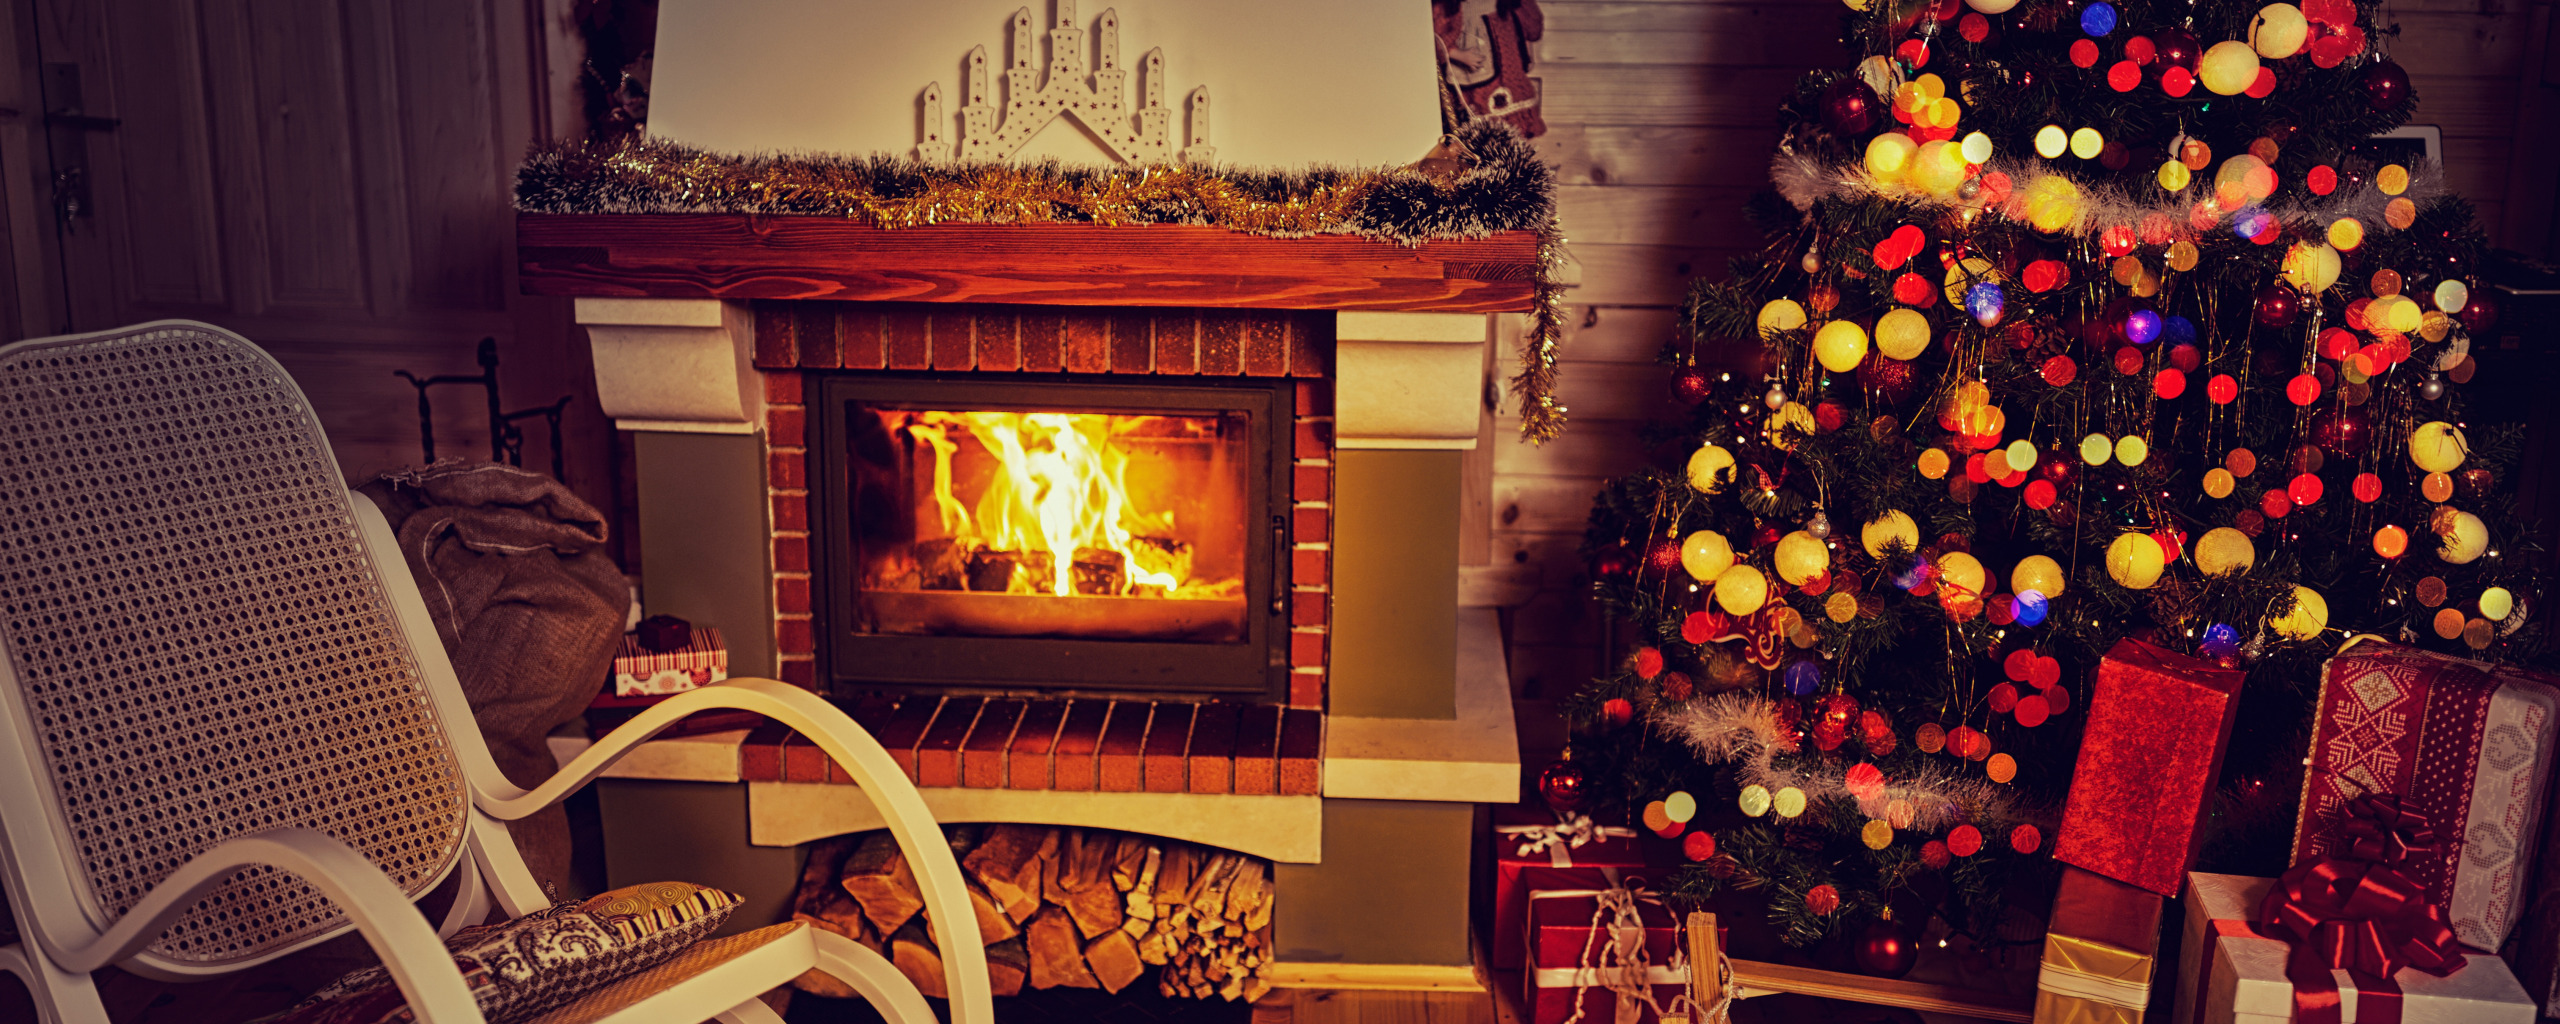 Новый Год, Рождество, камин, merry christmas, interior, decoration, christm...